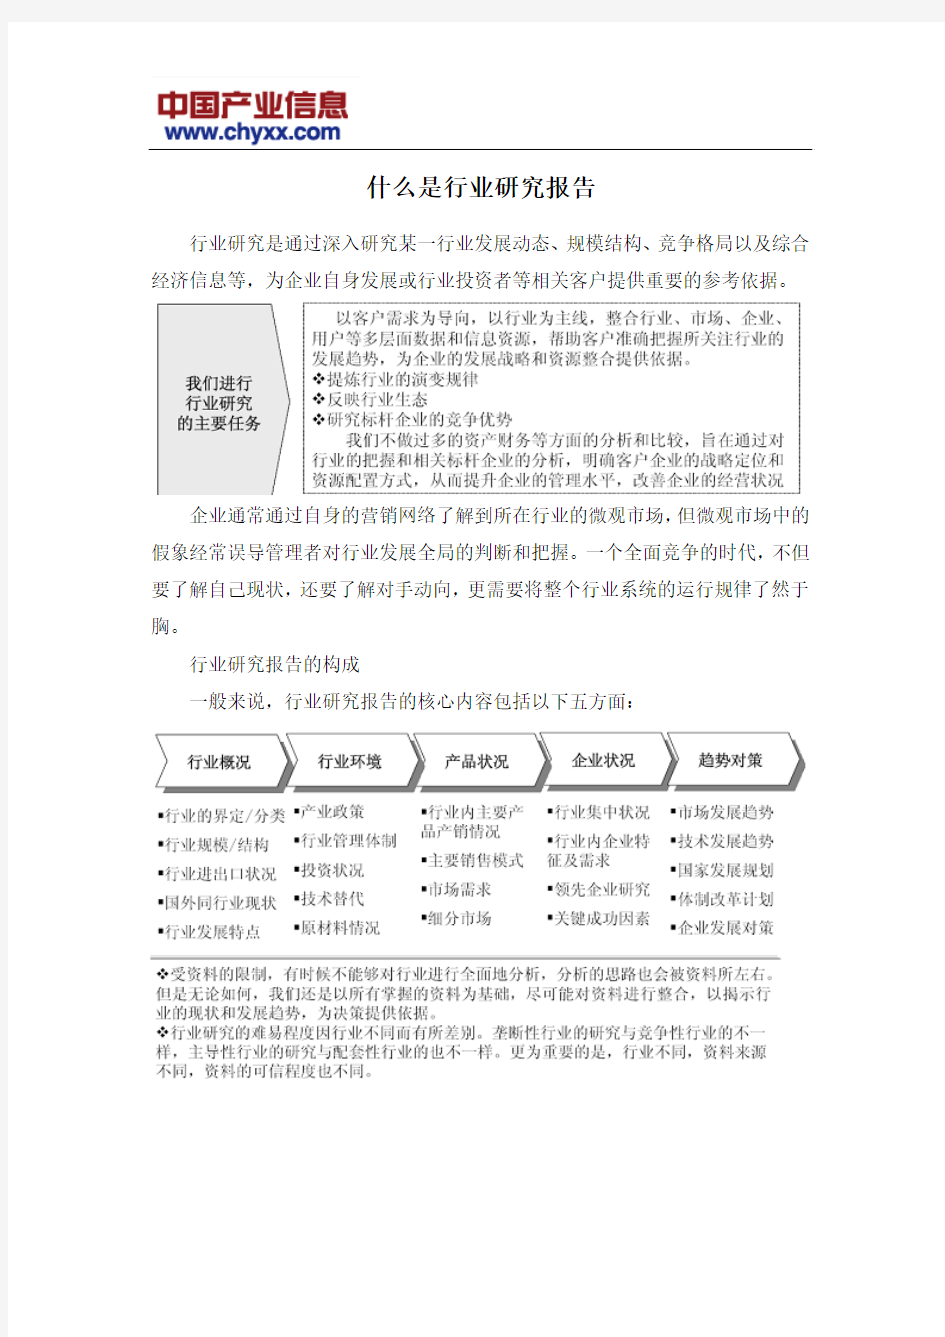 2014年中国监控摄像机行业咨询报告